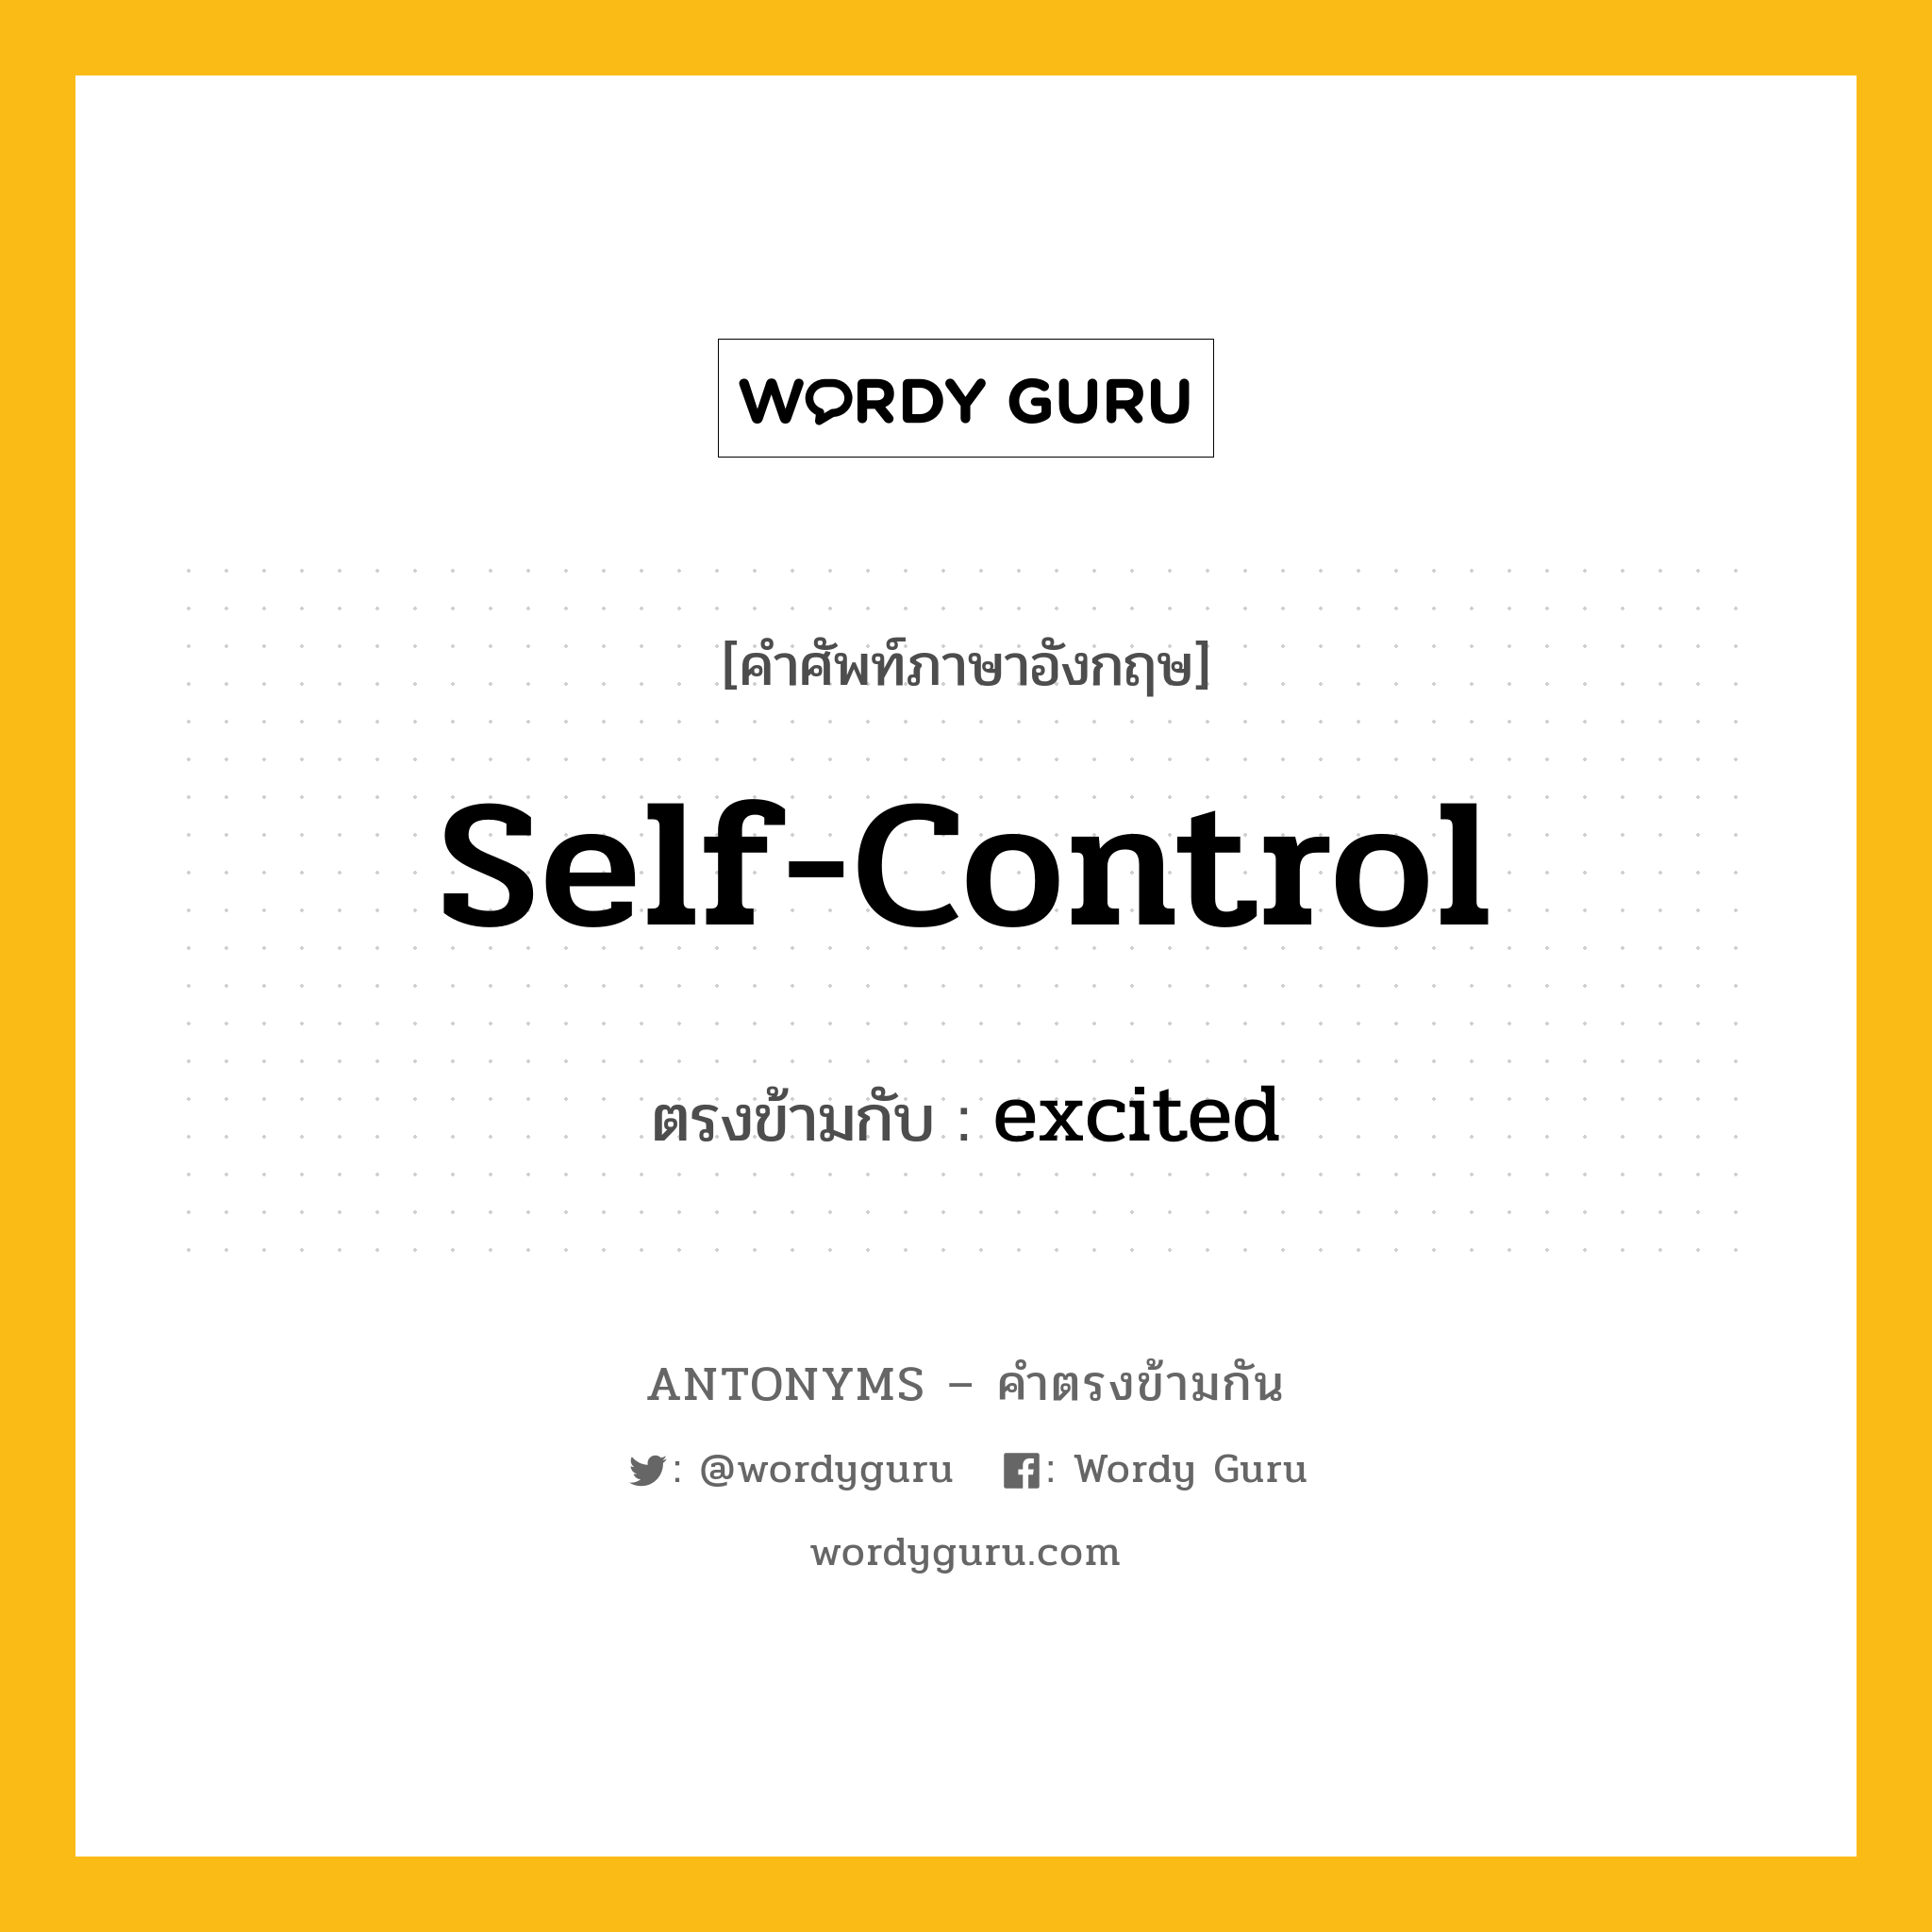 self-control เป็นคำตรงข้ามกับคำไหนบ้าง?, คำศัพท์ภาษาอังกฤษที่มีความหมายตรงข้ามกัน self-control ตรงข้ามกับ excited หมวด excited